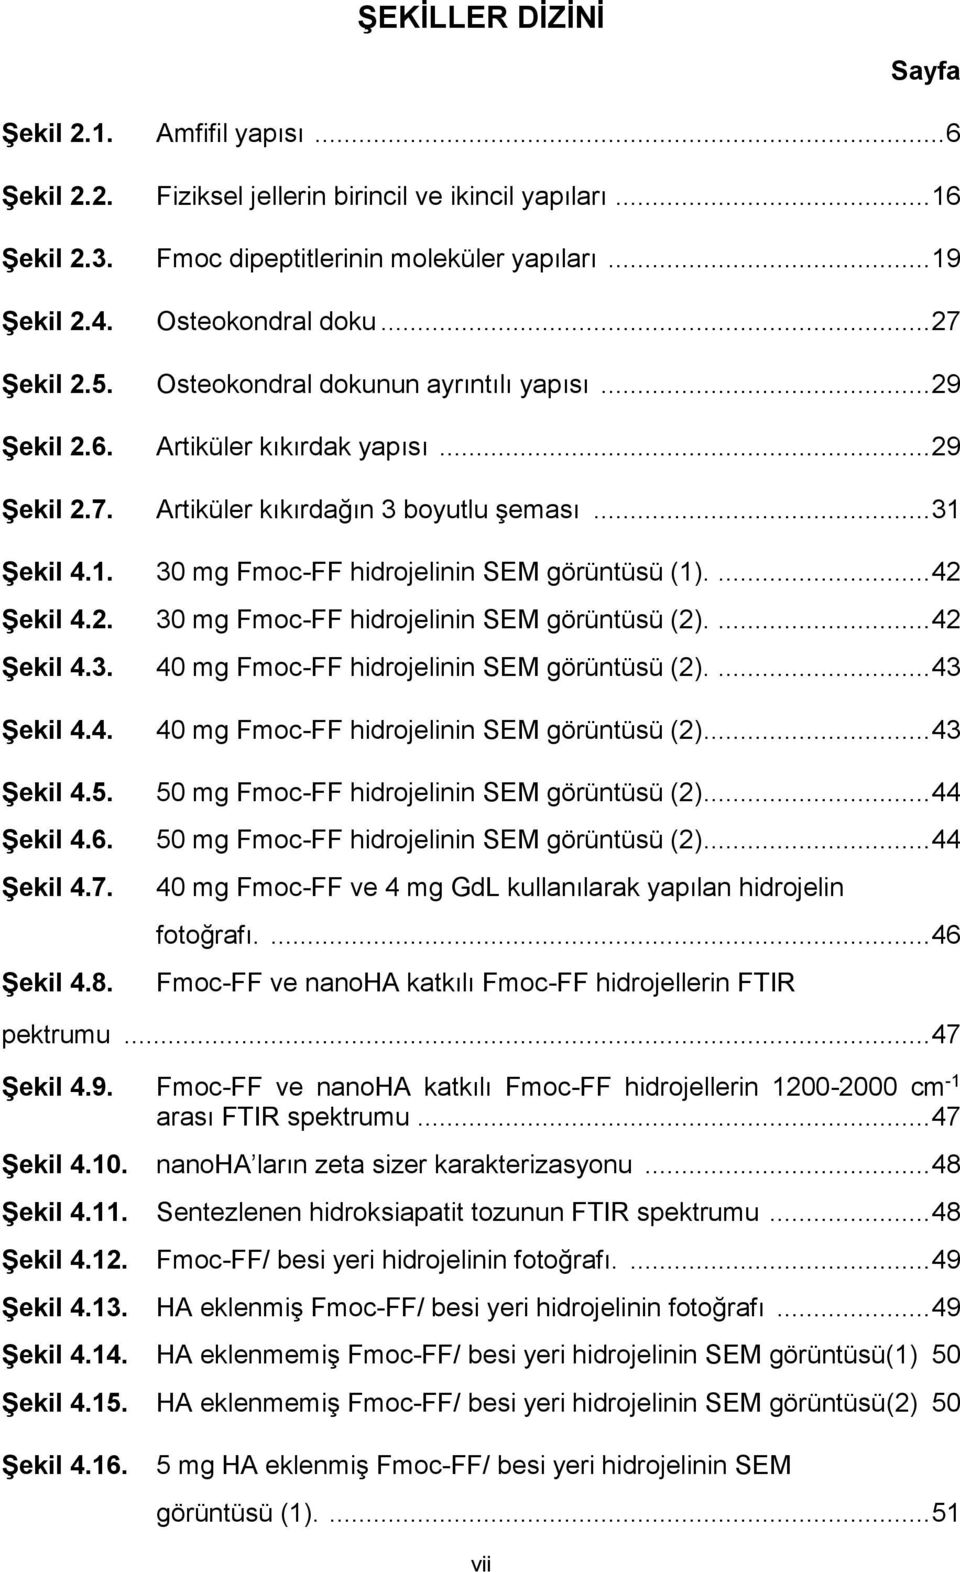 Şekil 4.1. 30 mg Fmoc-FF hidrojelinin SEM görüntüsü (1).... 42 Şekil 4.2. 30 mg Fmoc-FF hidrojelinin SEM görüntüsü (2).... 42 Şekil 4.3. 40 mg Fmoc-FF hidrojelinin SEM görüntüsü (2).... 43 Şekil 4.4. 40 mg Fmoc-FF hidrojelinin SEM görüntüsü (2)... 43 Şekil 4.5.